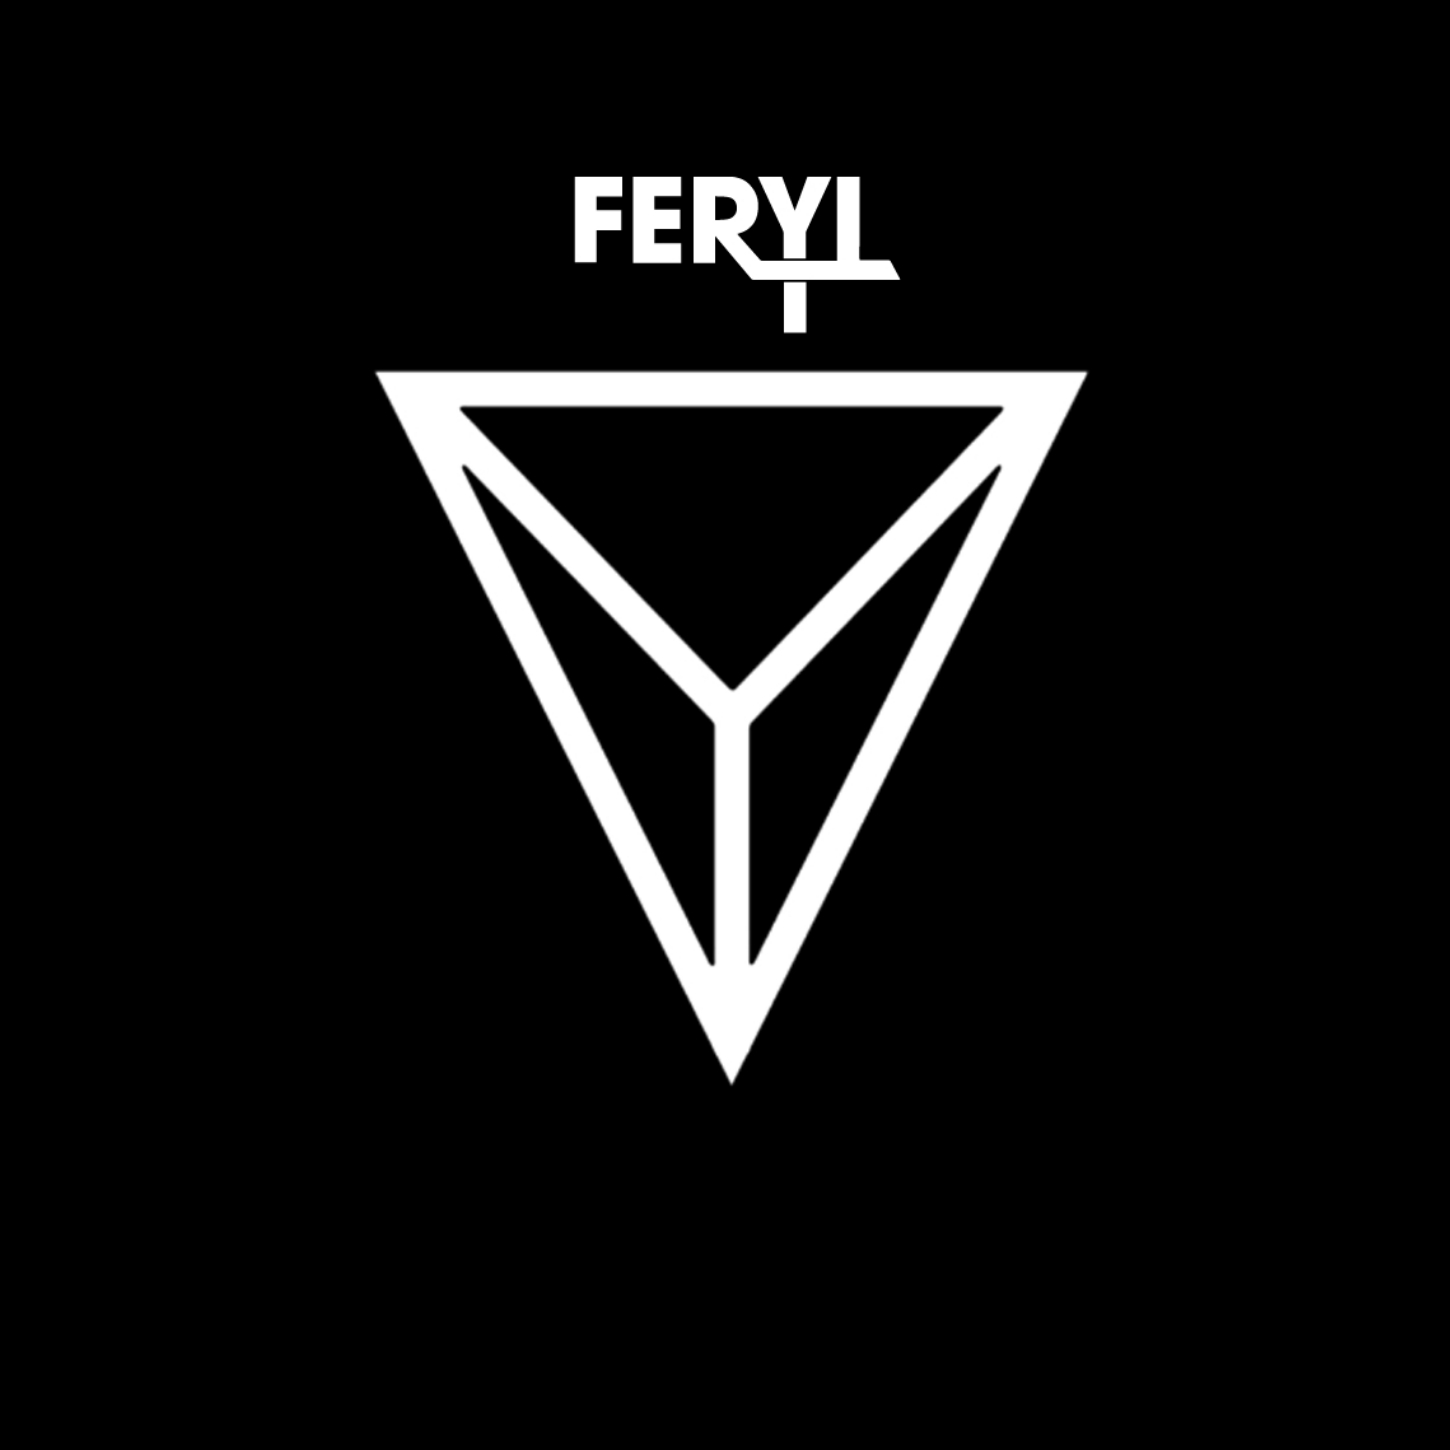  Feryl – “Room 13”